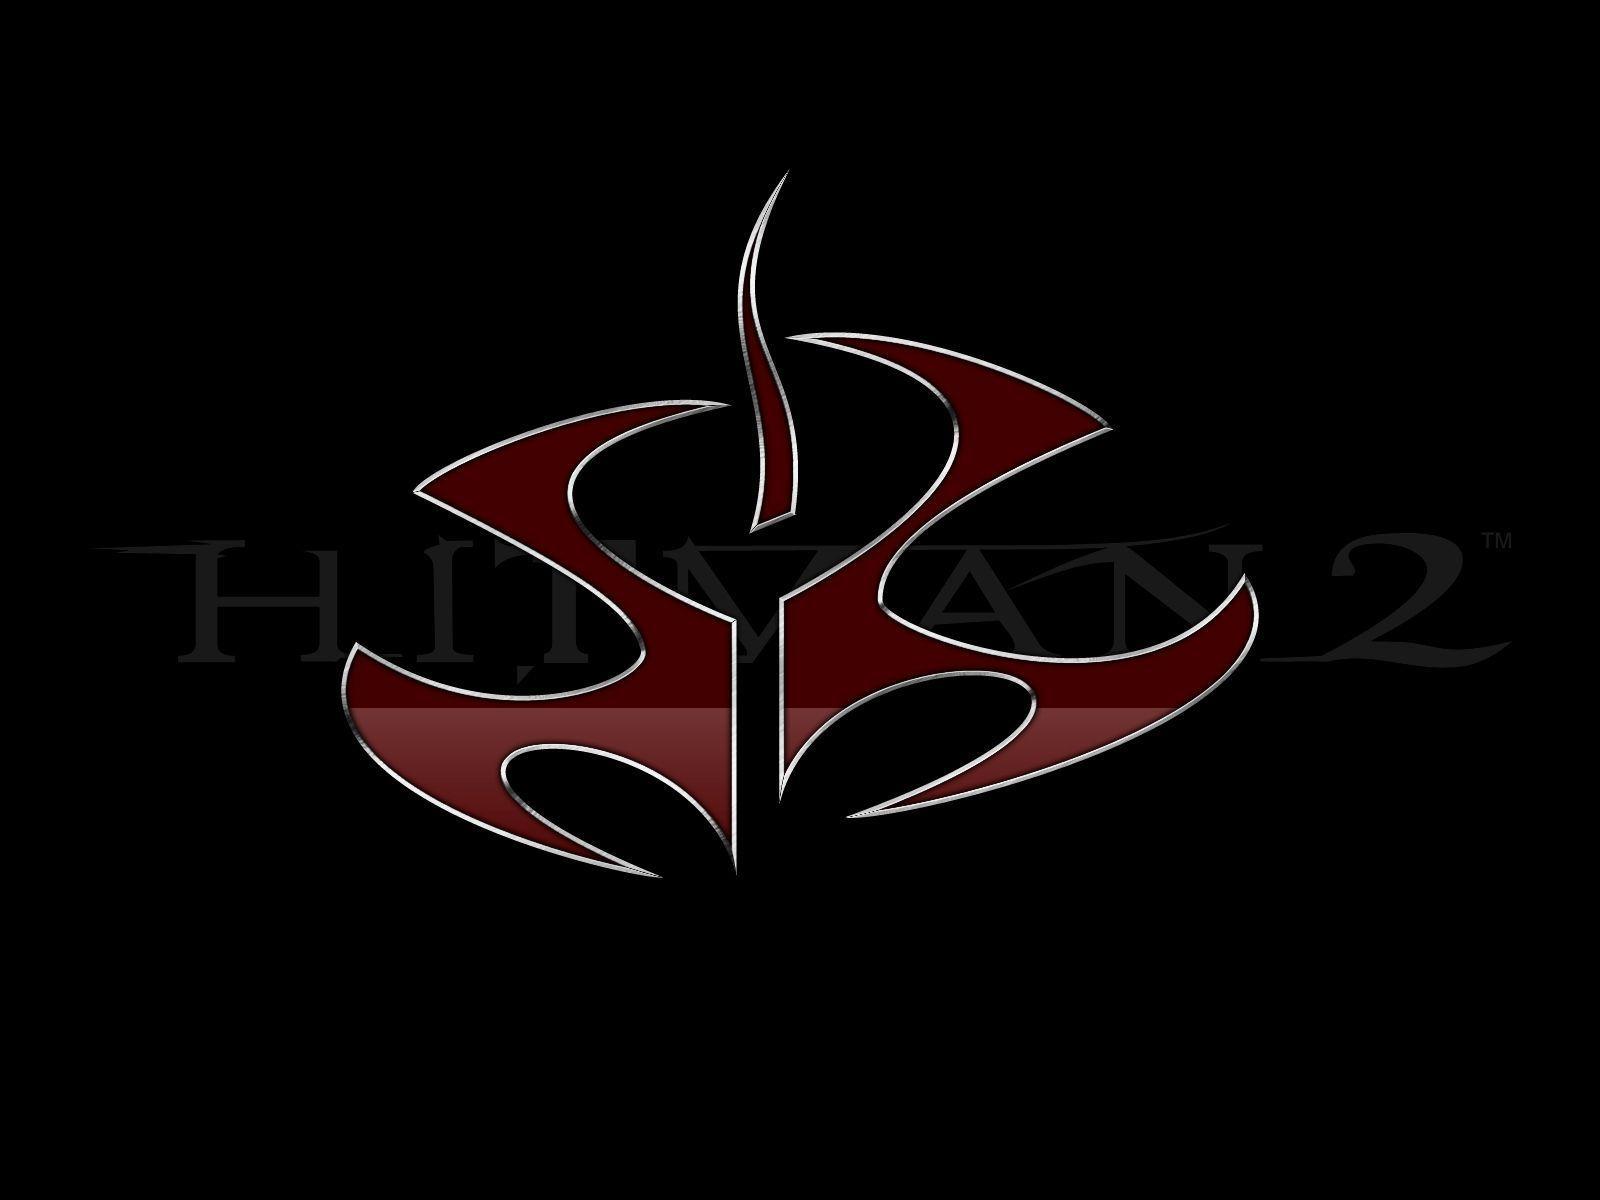 Hitman logo mobile HD wallpapers  Pxfuel